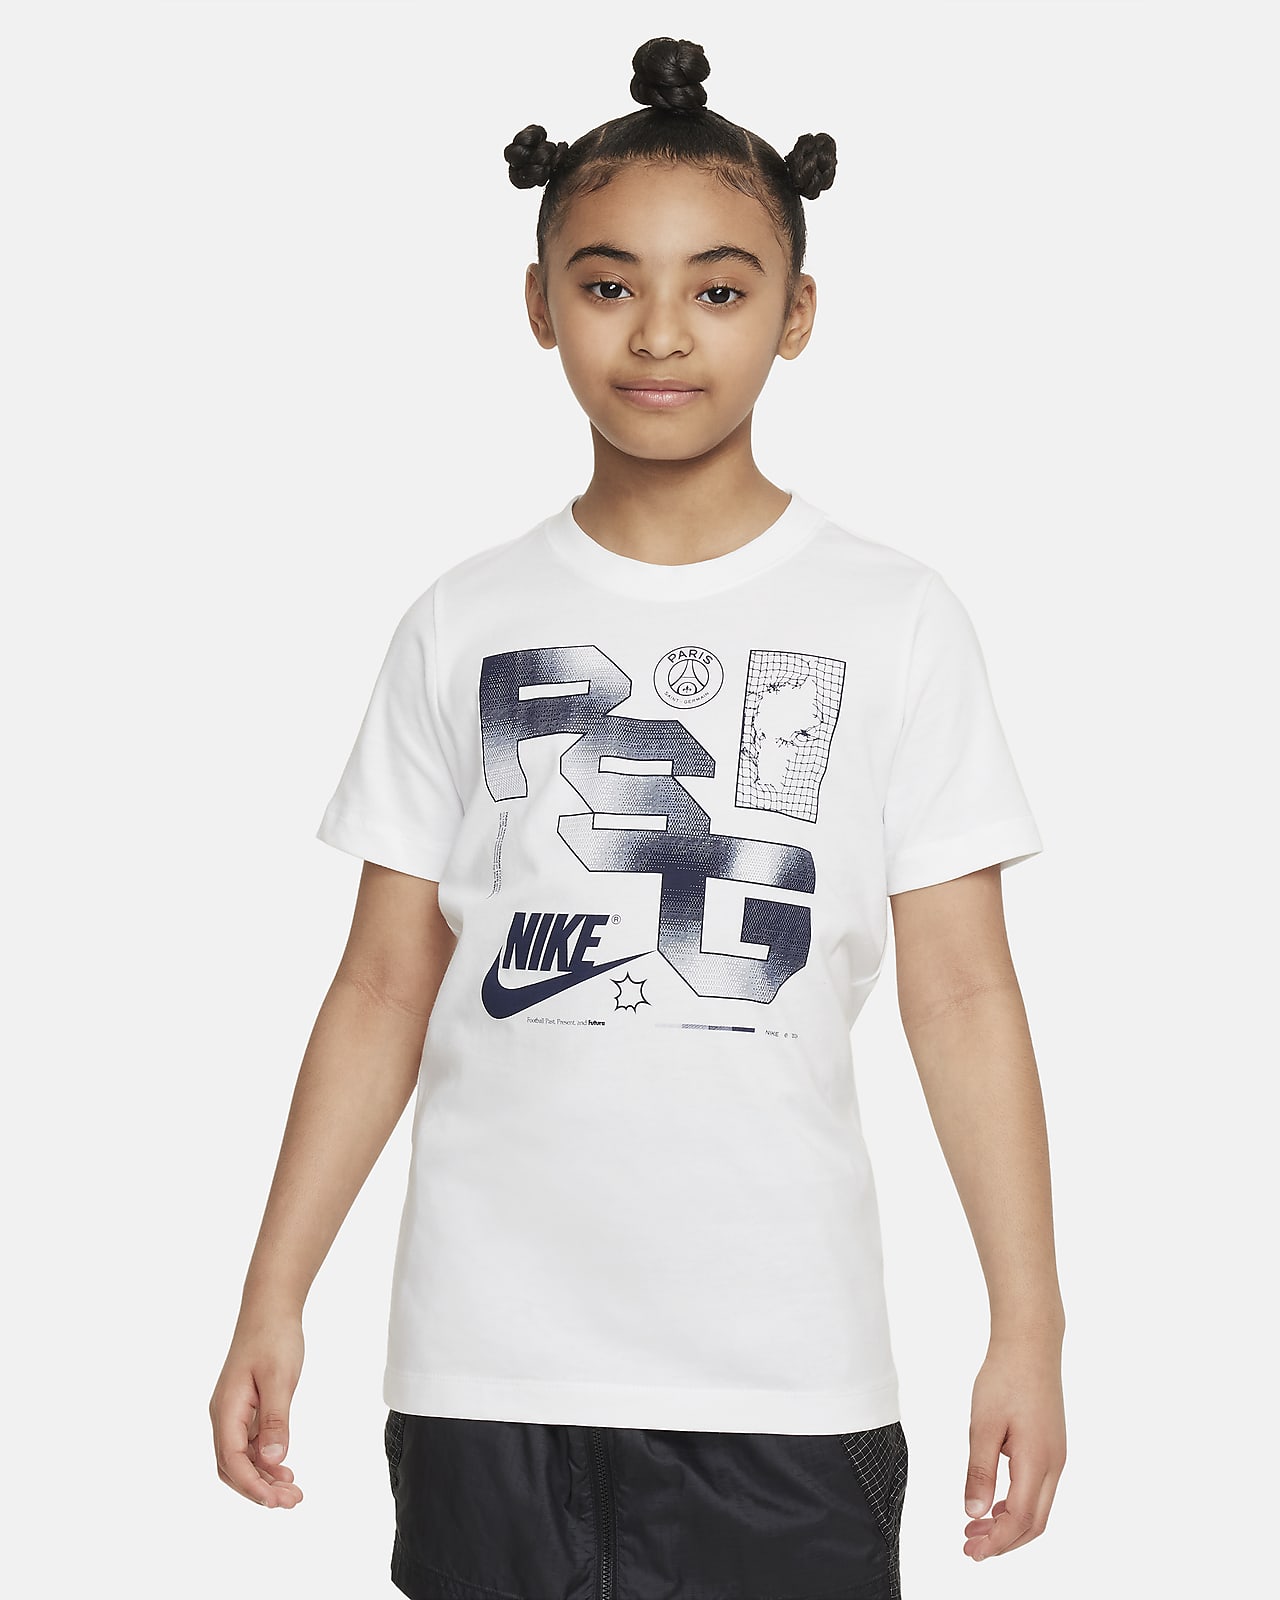 Paris Saint-Germain Big Kids' Nike Soccer T-Shirt